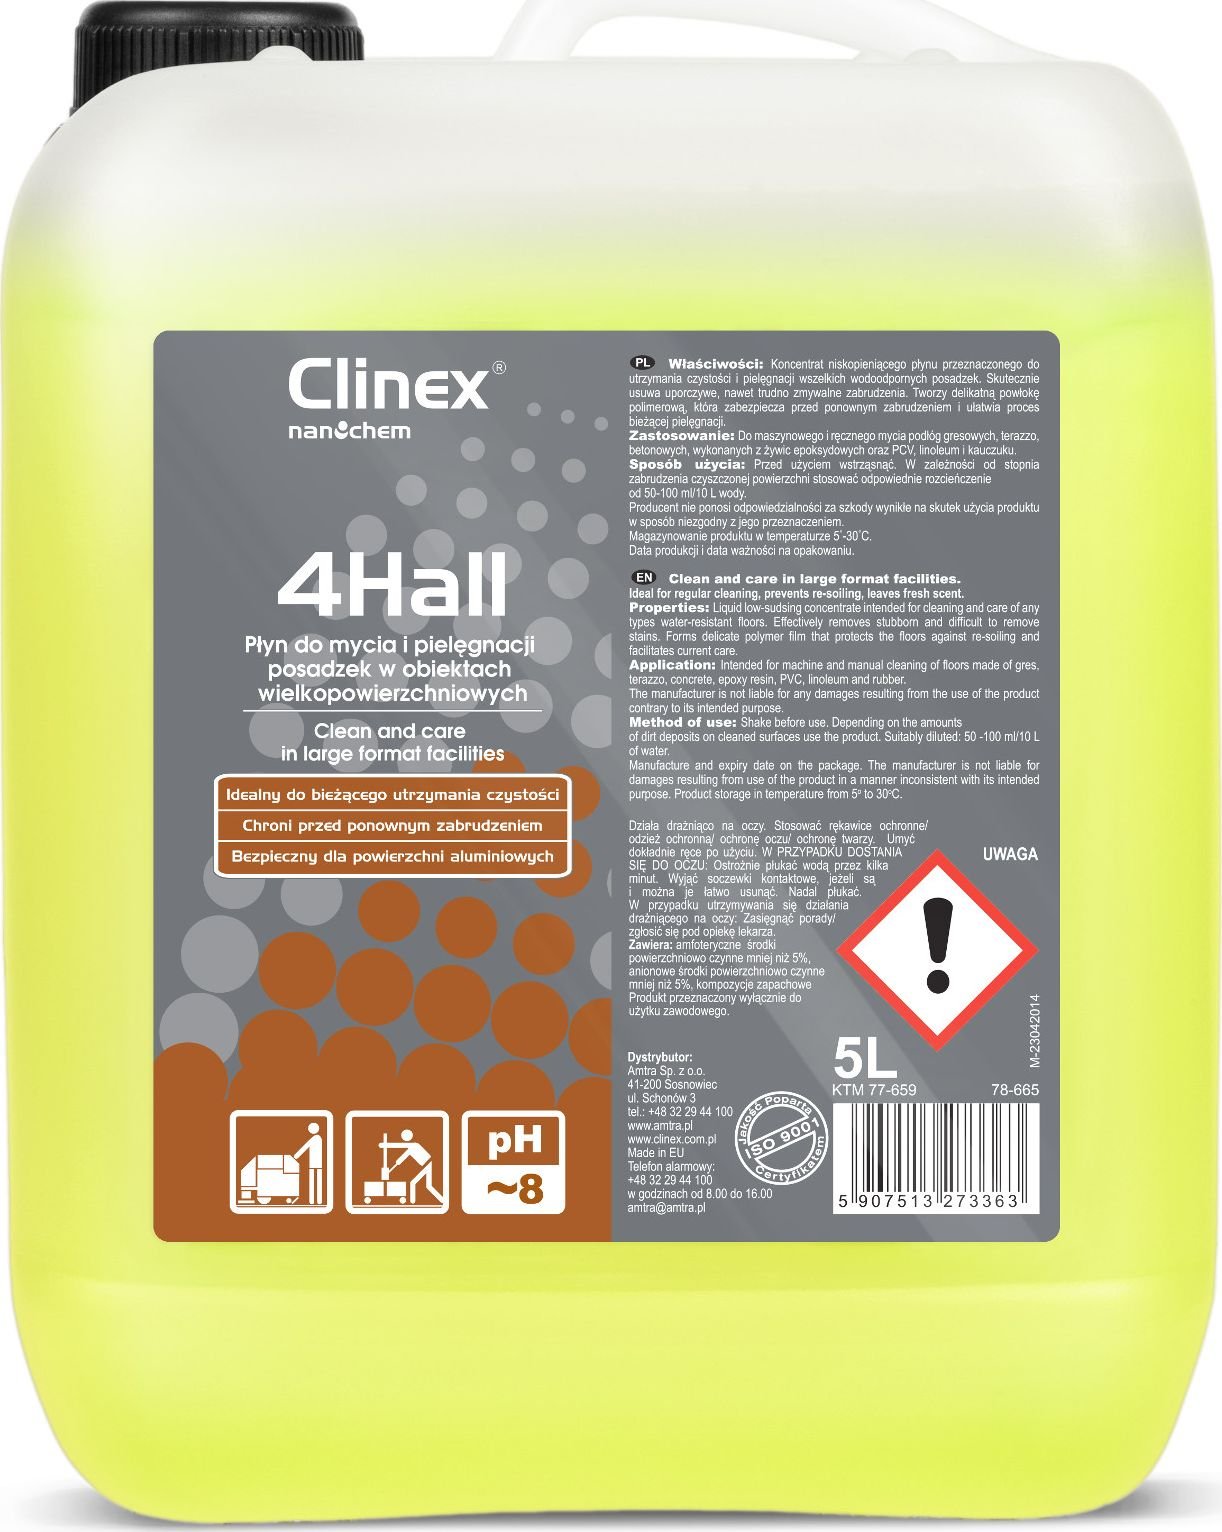 Lichid concentrat Clinex Polymer pentru curățarea și îngrijirea pardoselilor CLINEX 4Hall 5L Lichid concentrat polimeric pentru curățarea și îngrijirea pardoselilor CLINEX 4Hall 5L